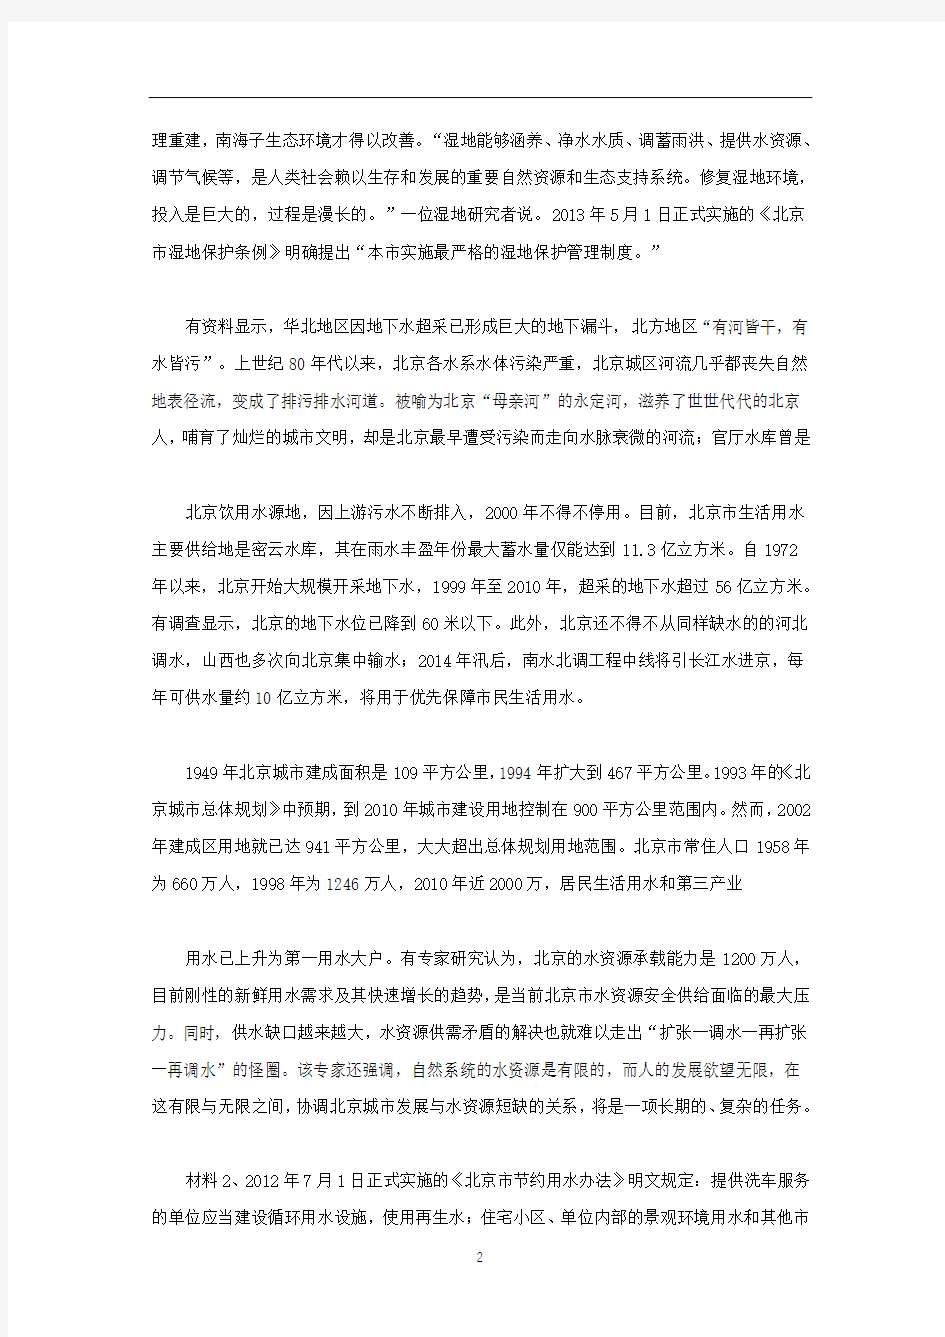 2014年北京公务员申论考试真题及答案